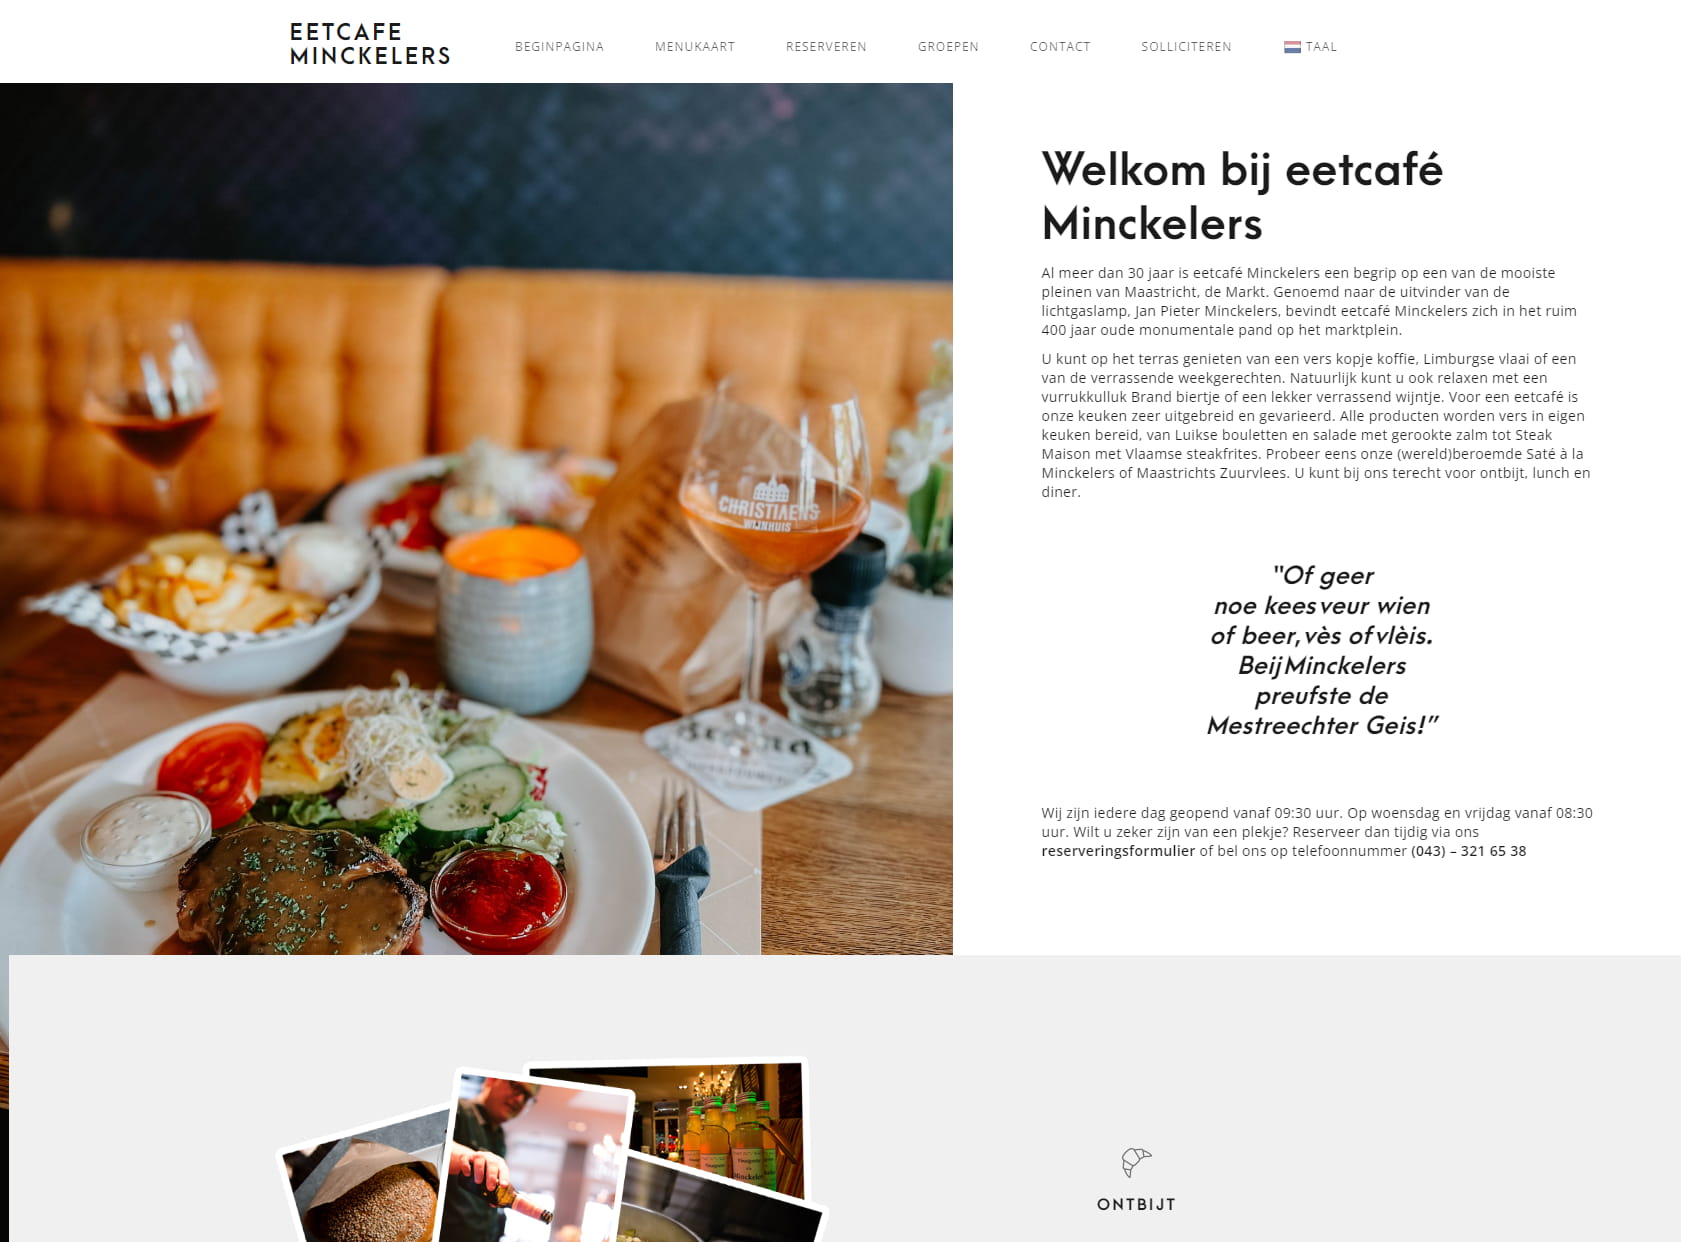 Restaurant Maastricht, eetcafé Minckelers